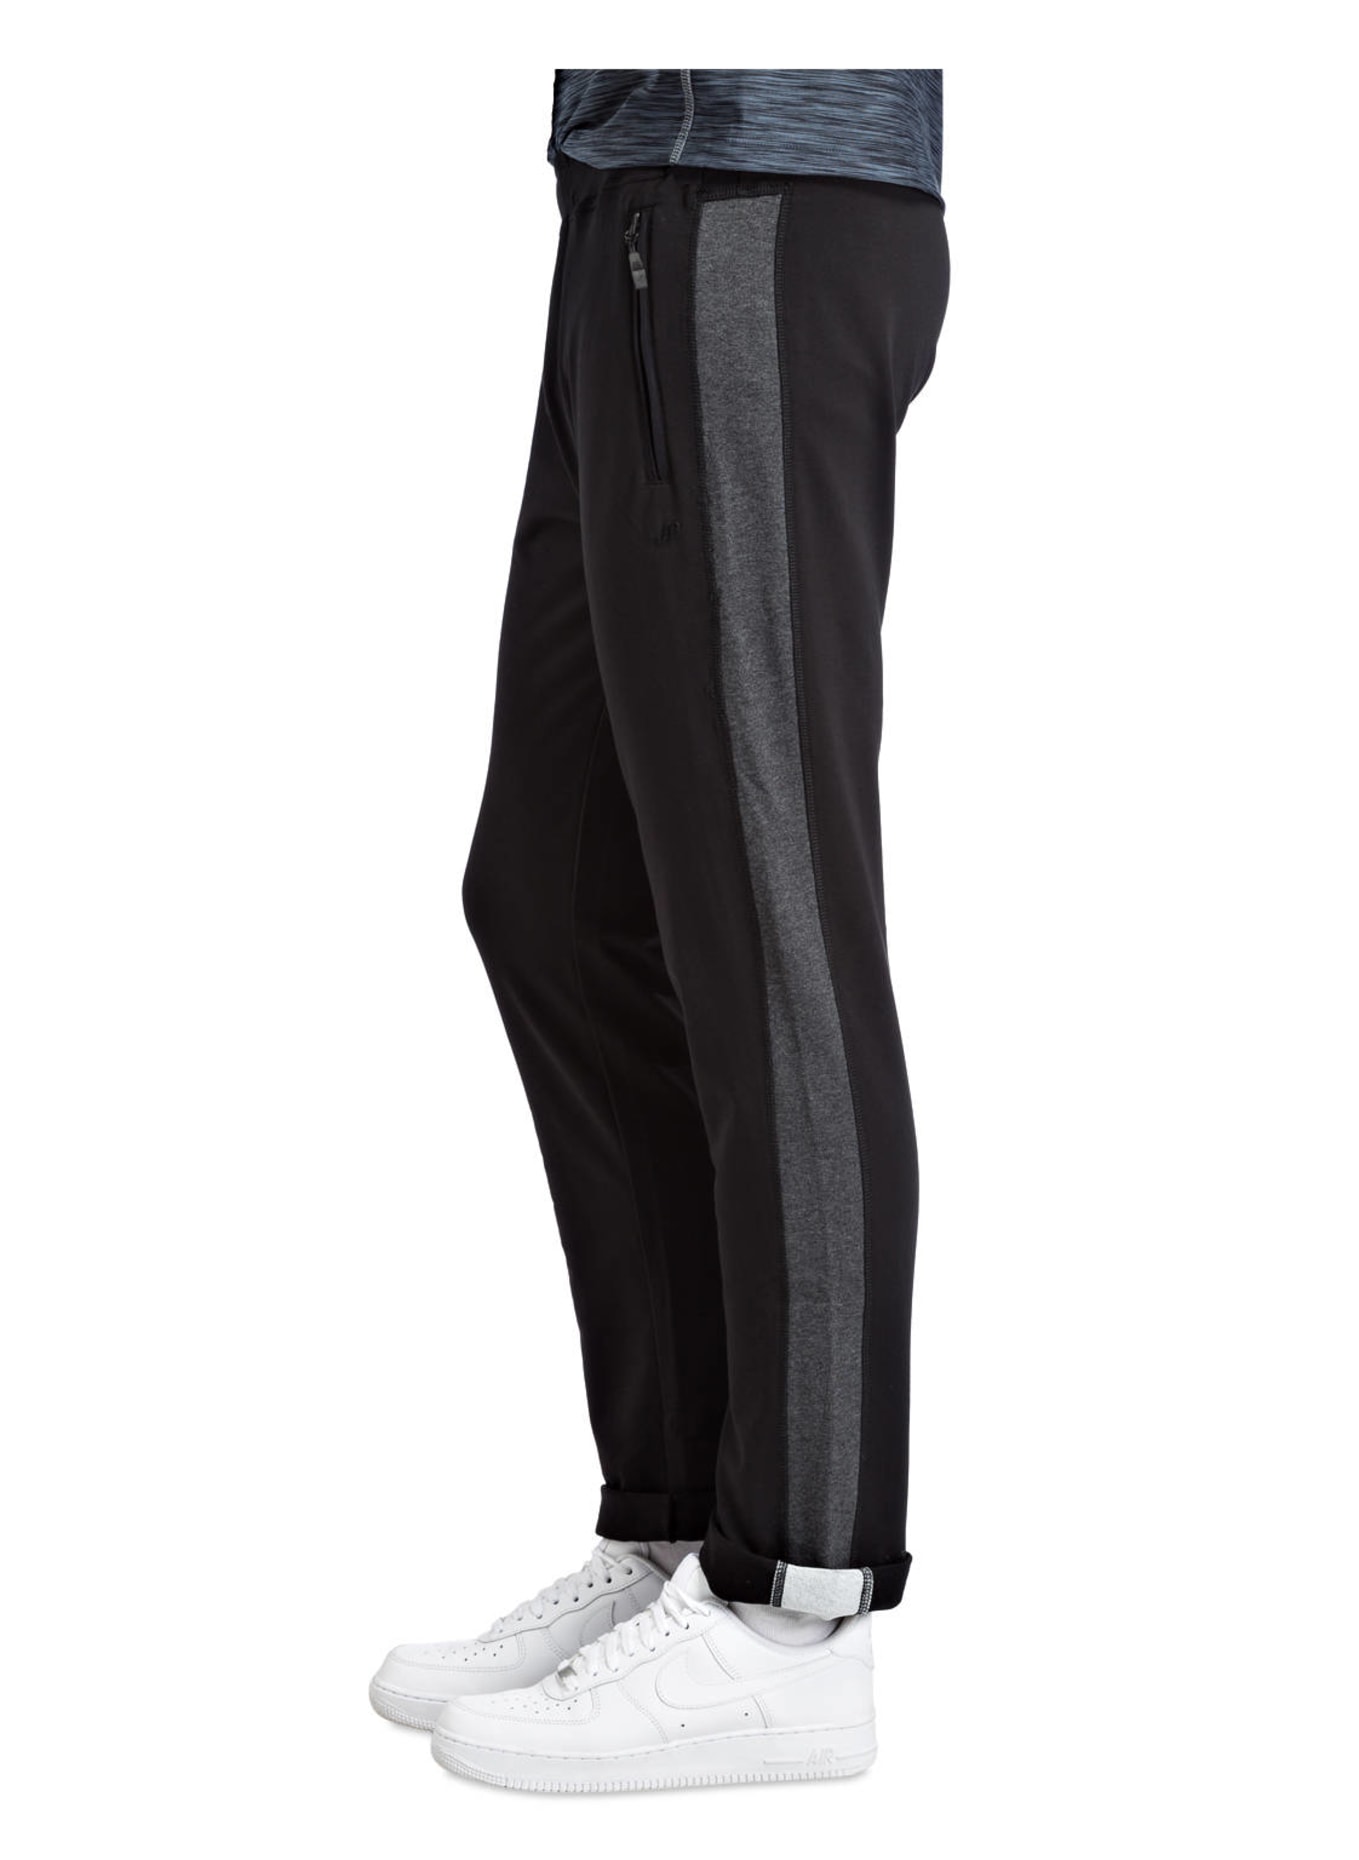 JOY sportswear Sweatpants FERNANDO, Farbe: SCHWARZ (Bild 4)